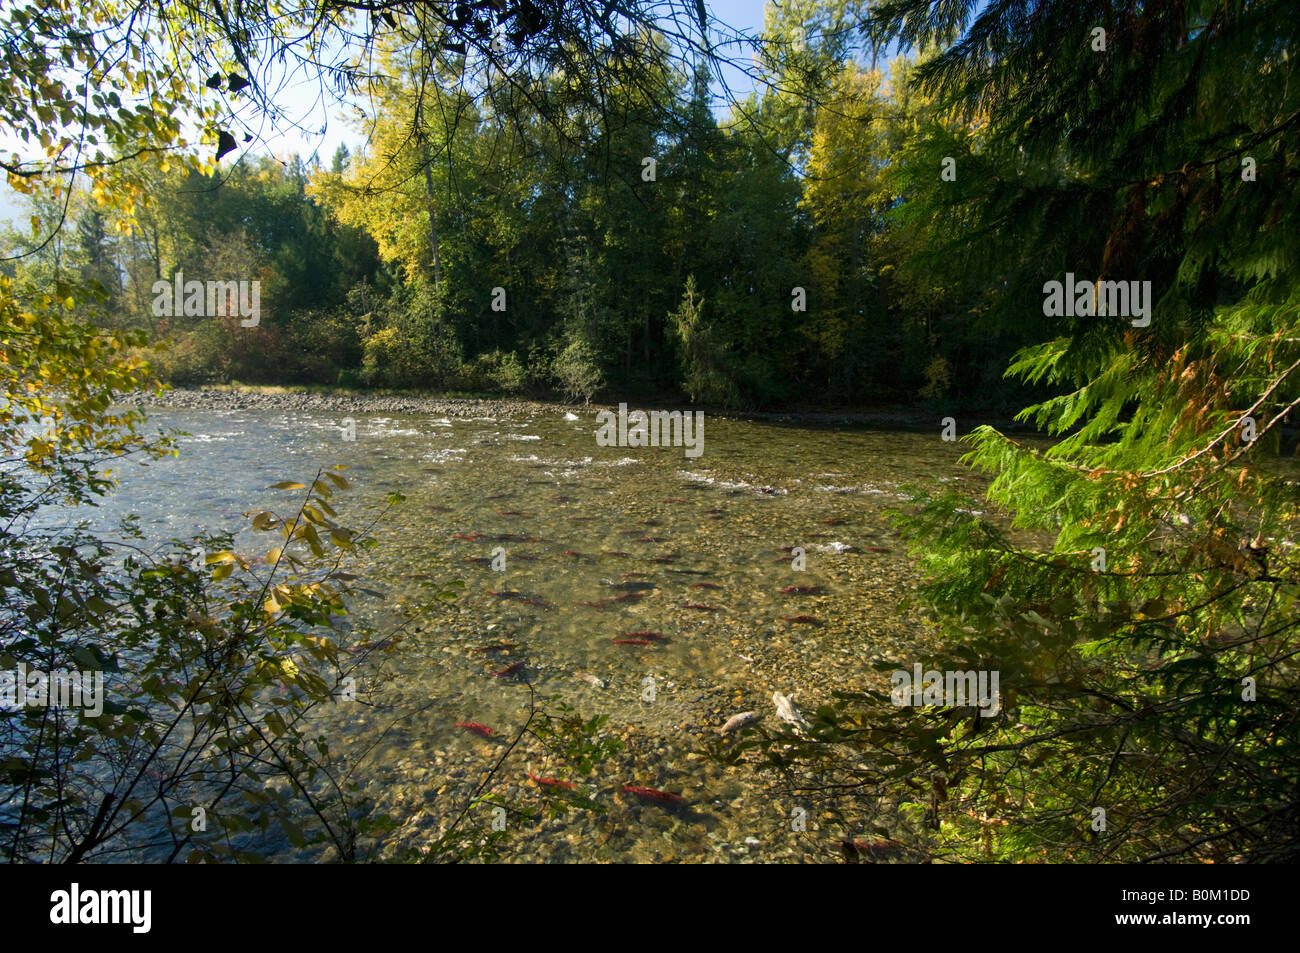 Salmones Sockeye, Otoño de desove, Adams River, BC Canadá Foto de stock